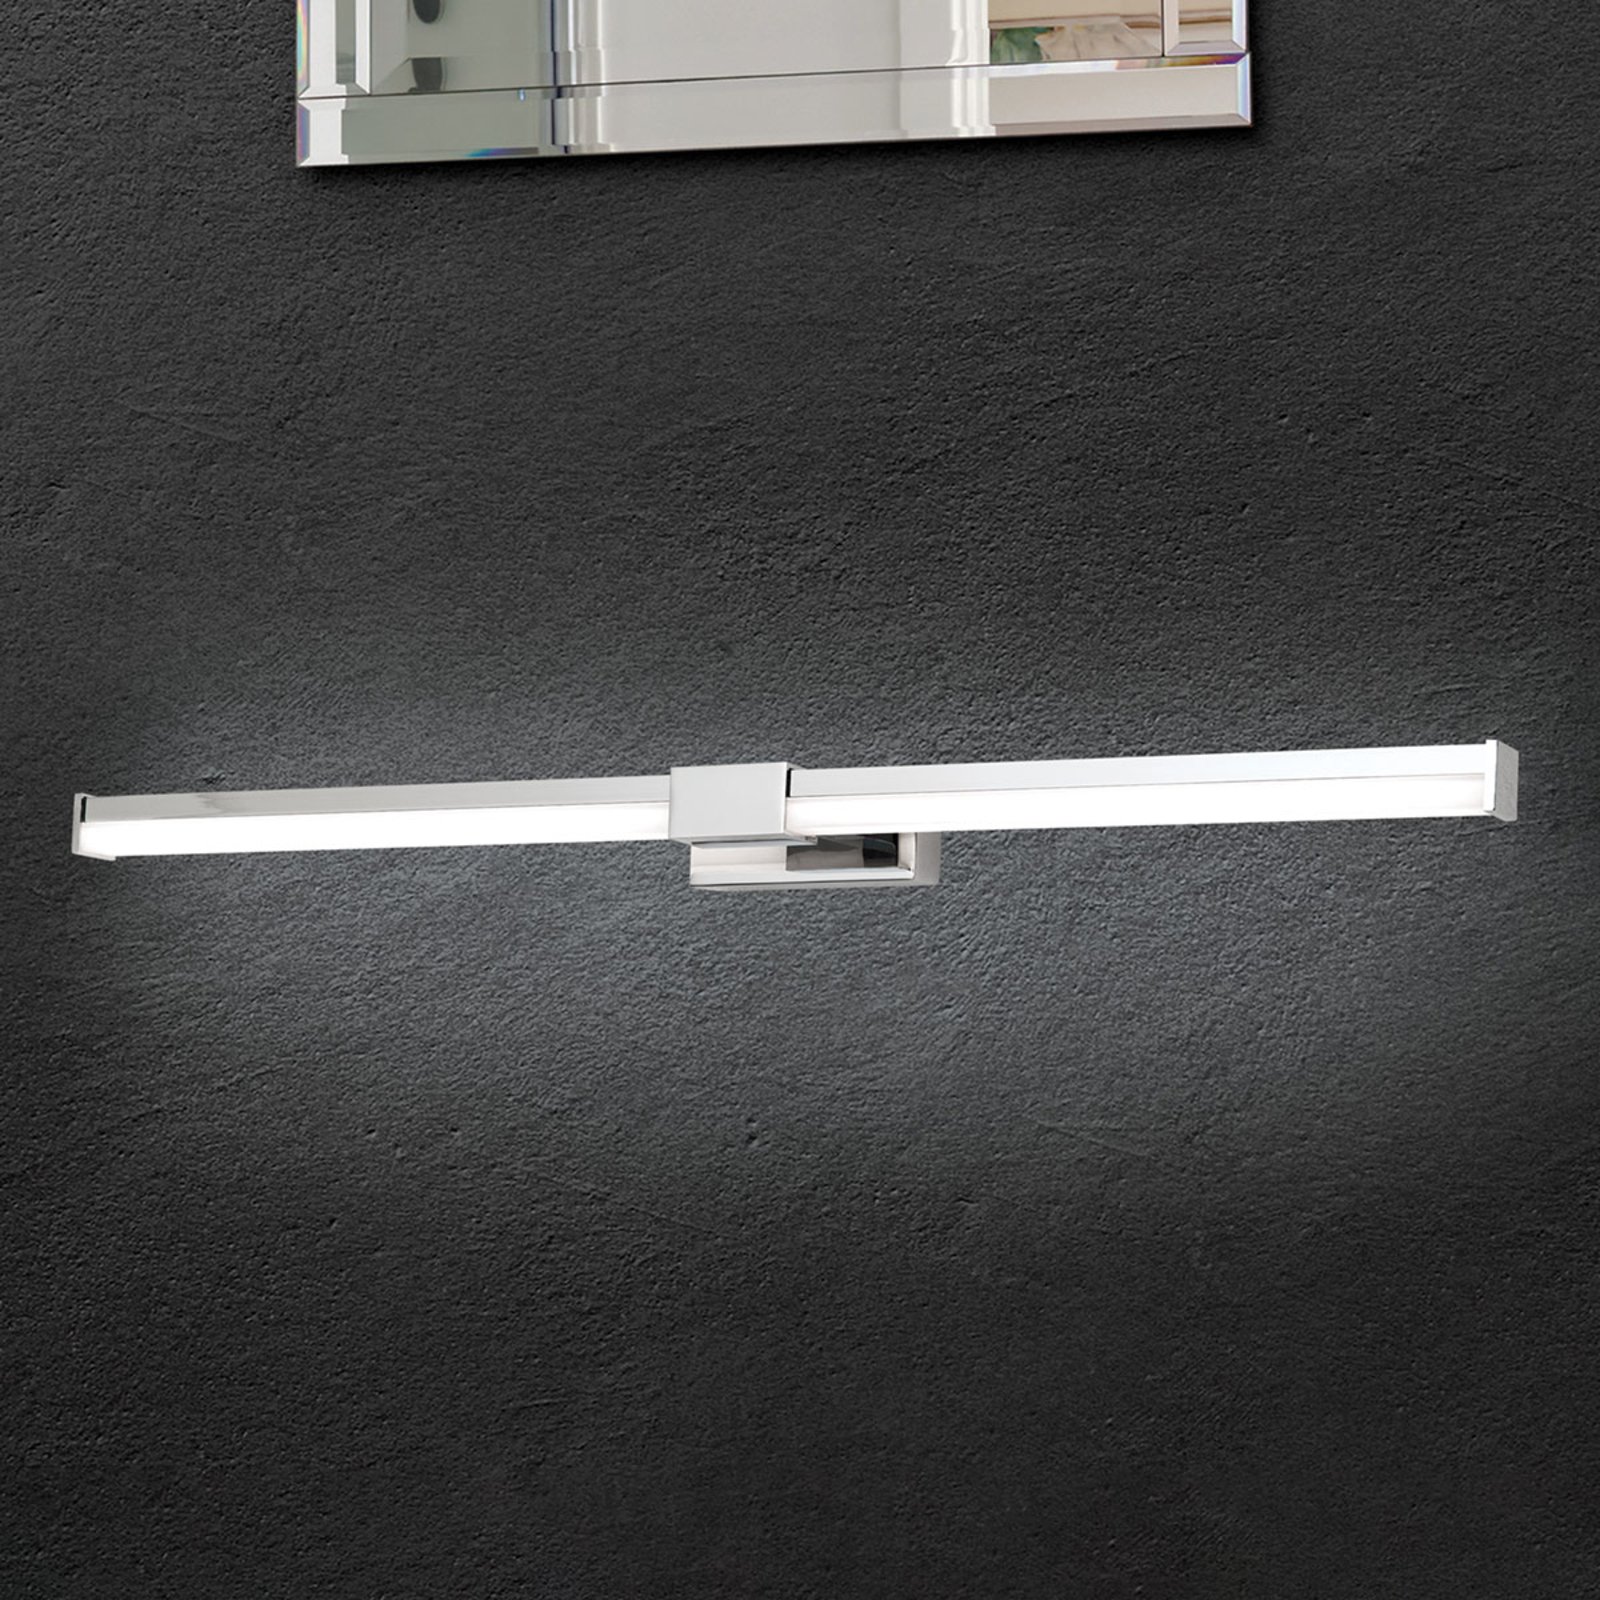 Koupelnové světlo nad zrcadlo Argo s LED 55,5 cm